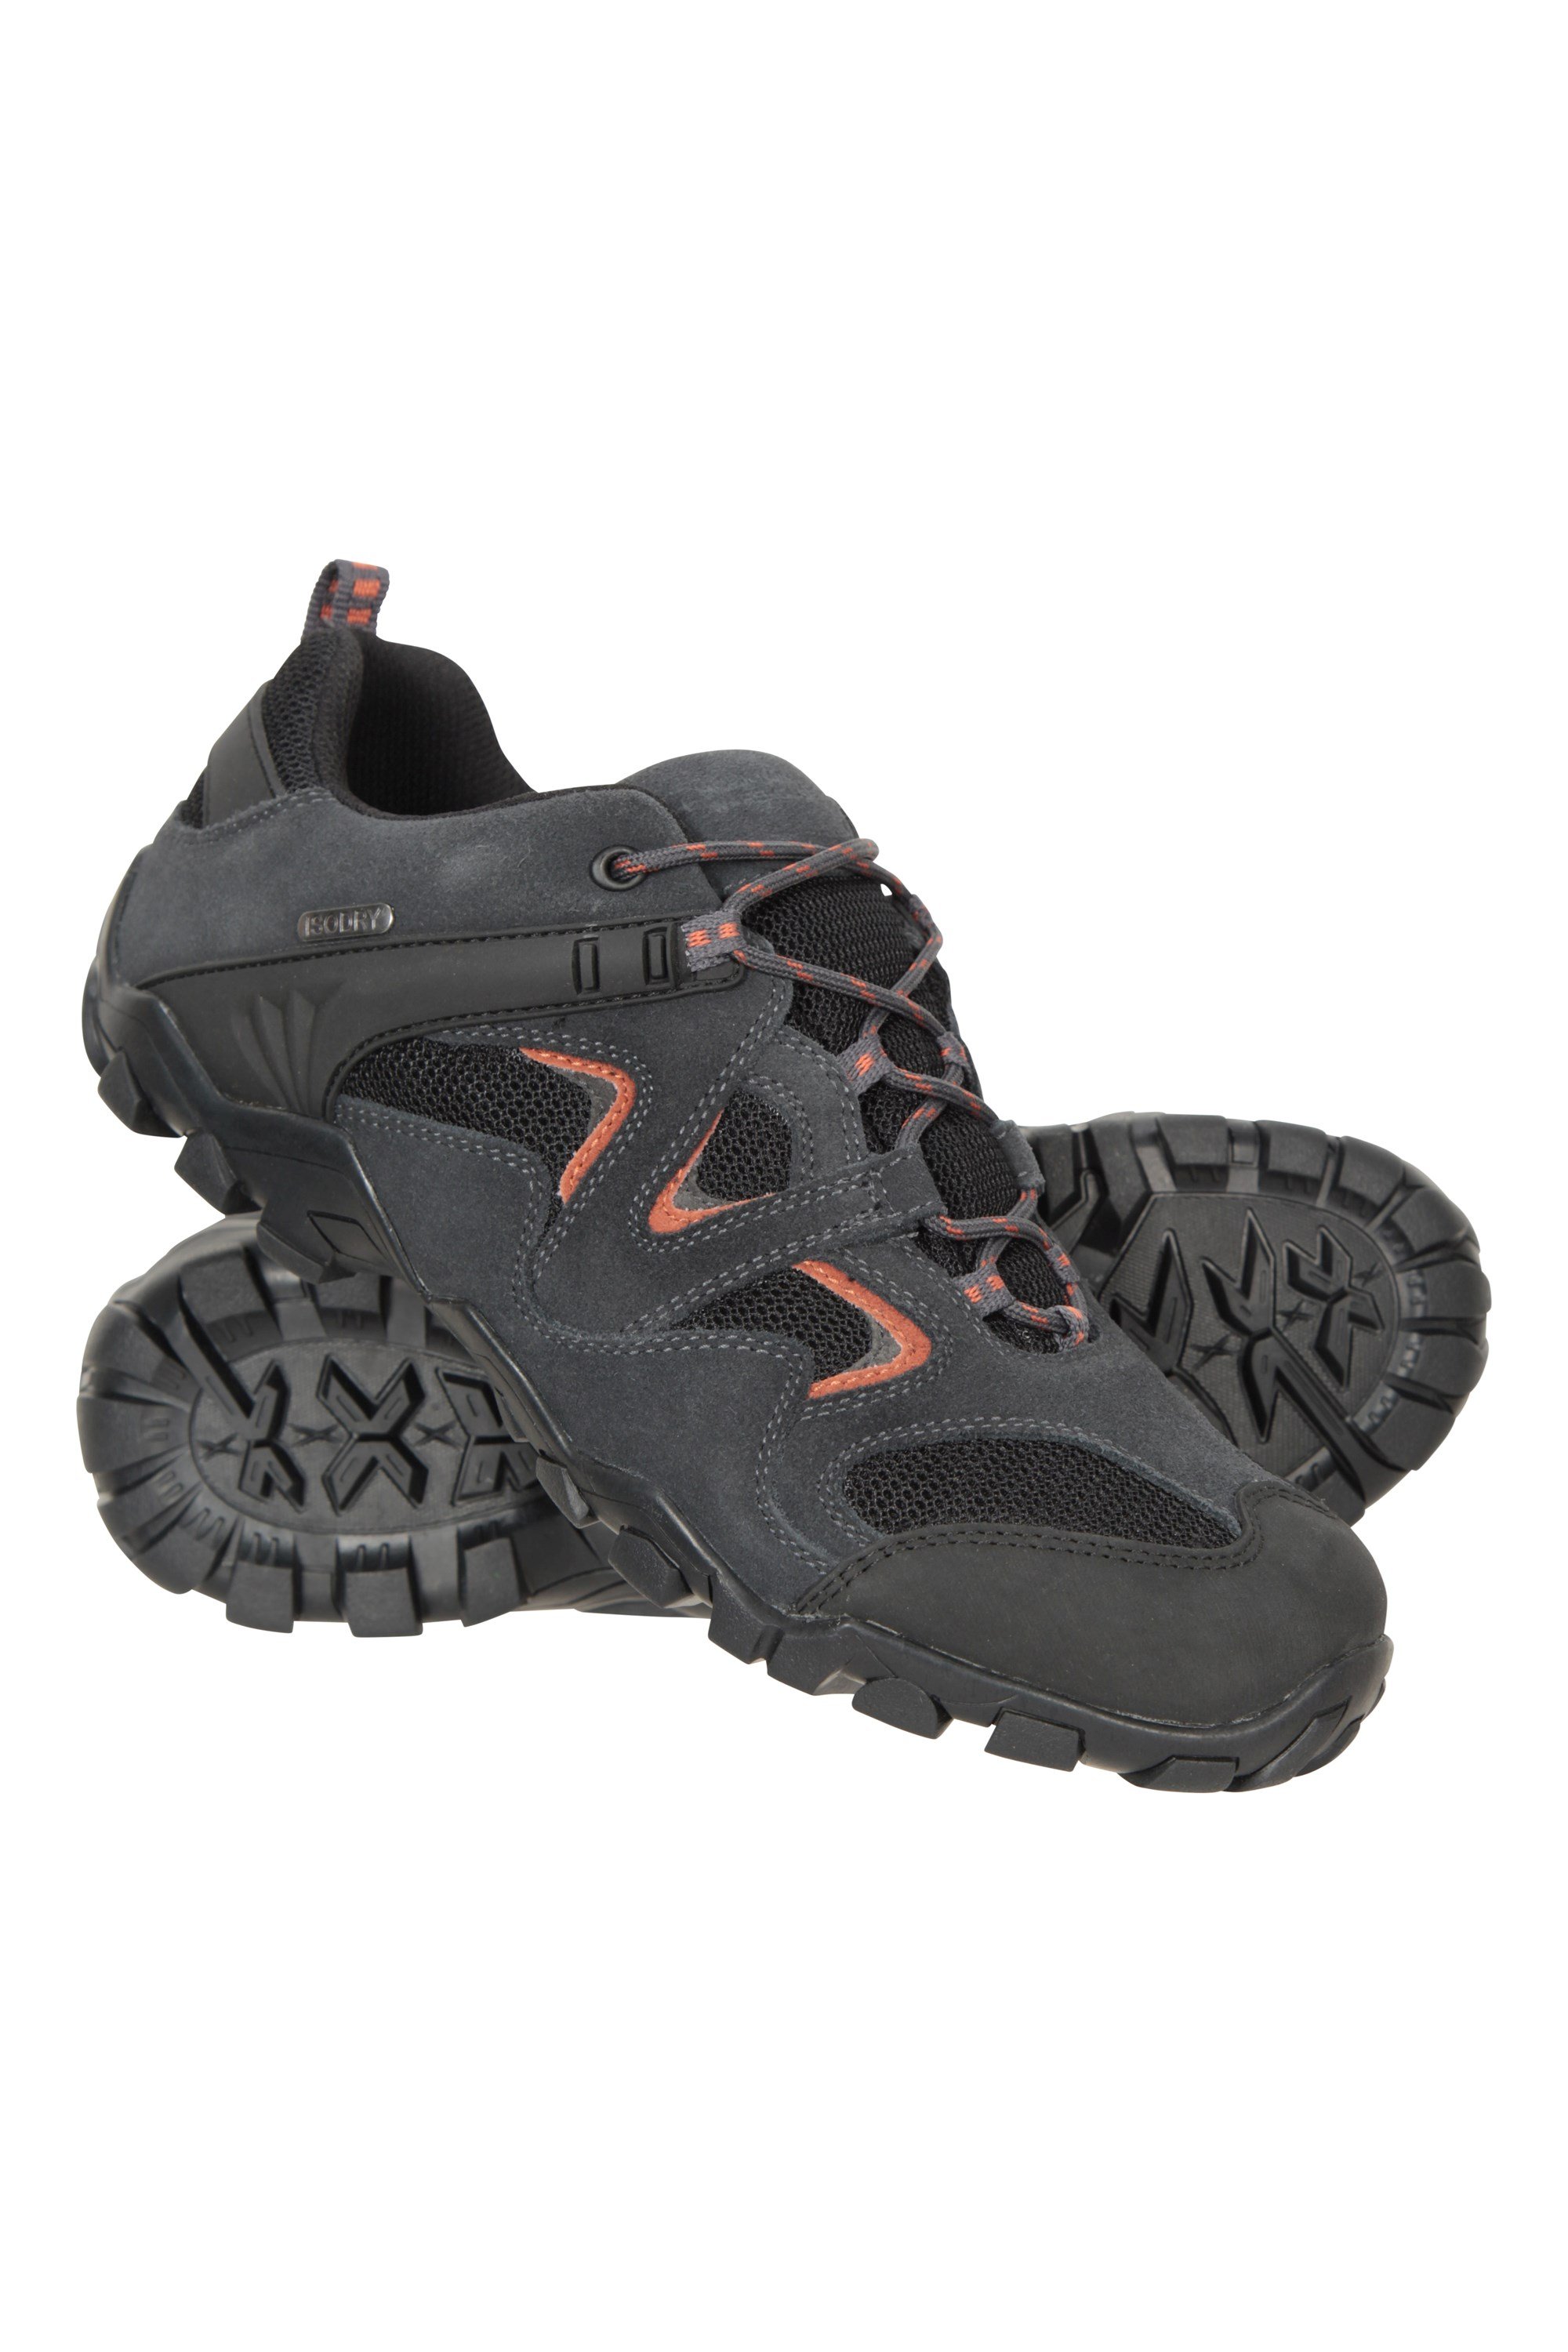 Curlew Mens Waterproof Walking Shoes - Grey